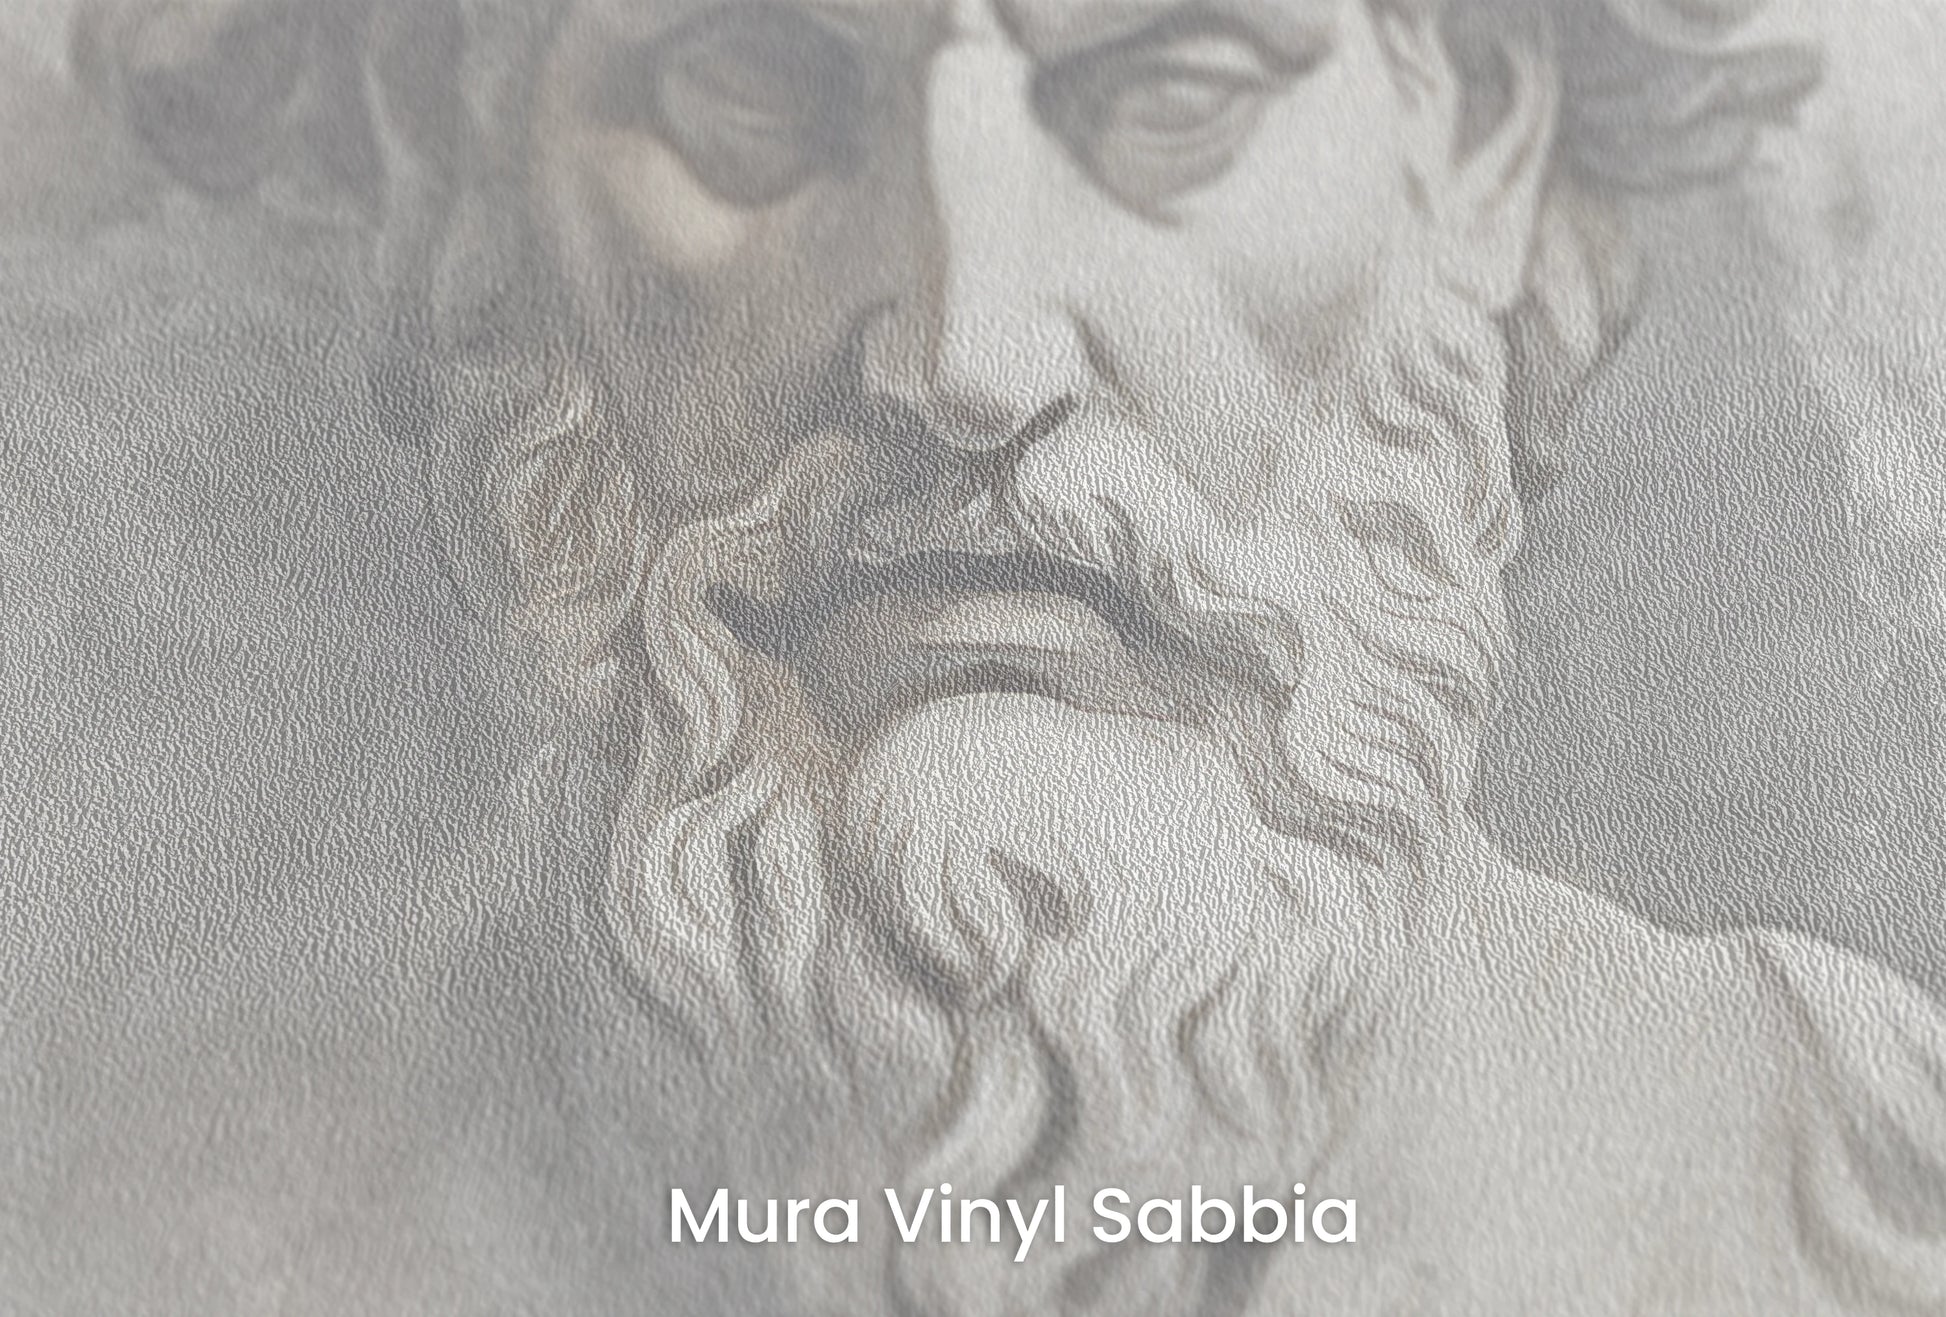 Zbliżenie na artystyczną fototapetę o nazwie Zeus's Majesty na podłożu Mura Vinyl Sabbia struktura grubego ziarna piasku.